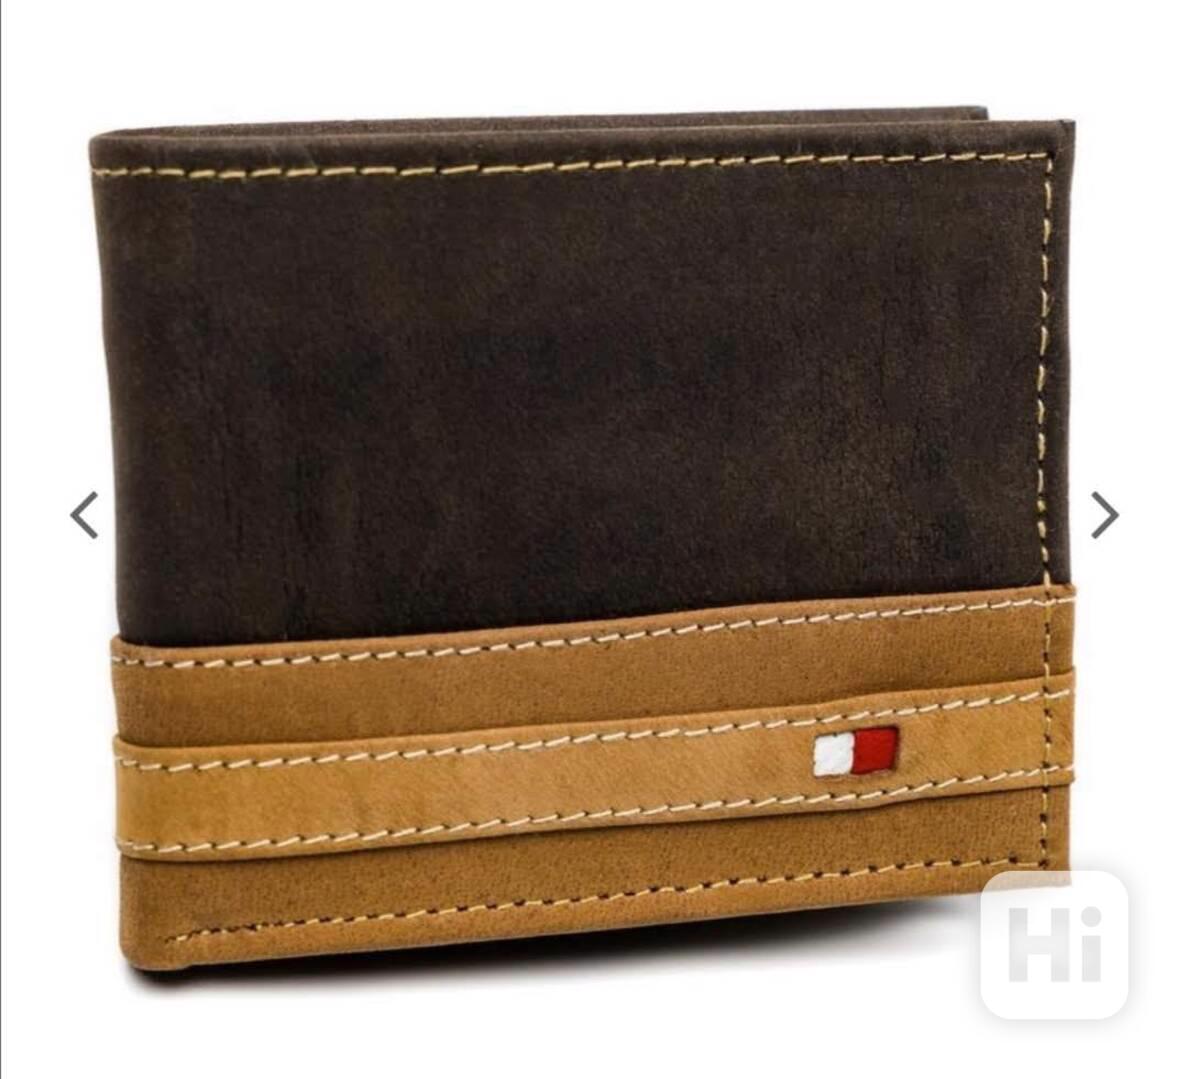 Pánská kožená peněženka Always Vild dvoubarevná v dárkové kr - foto 1